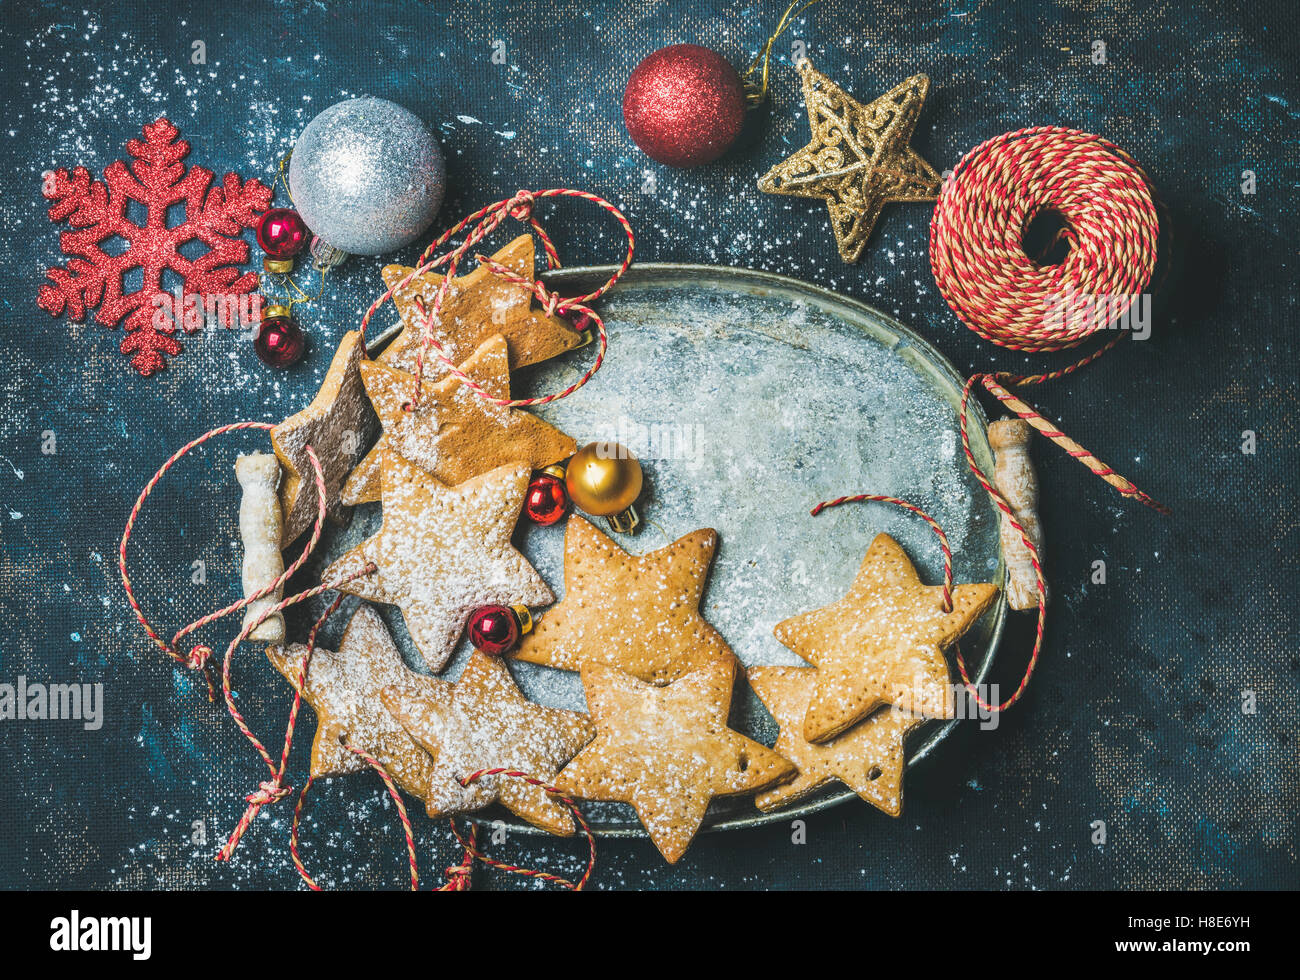 Vacaciones de Navidad galletas de jengibre con forma de estrella para la decoración del árbol de Navidad, copos de nieve decorativa, pelotas y juguetes en metal Foto de stock